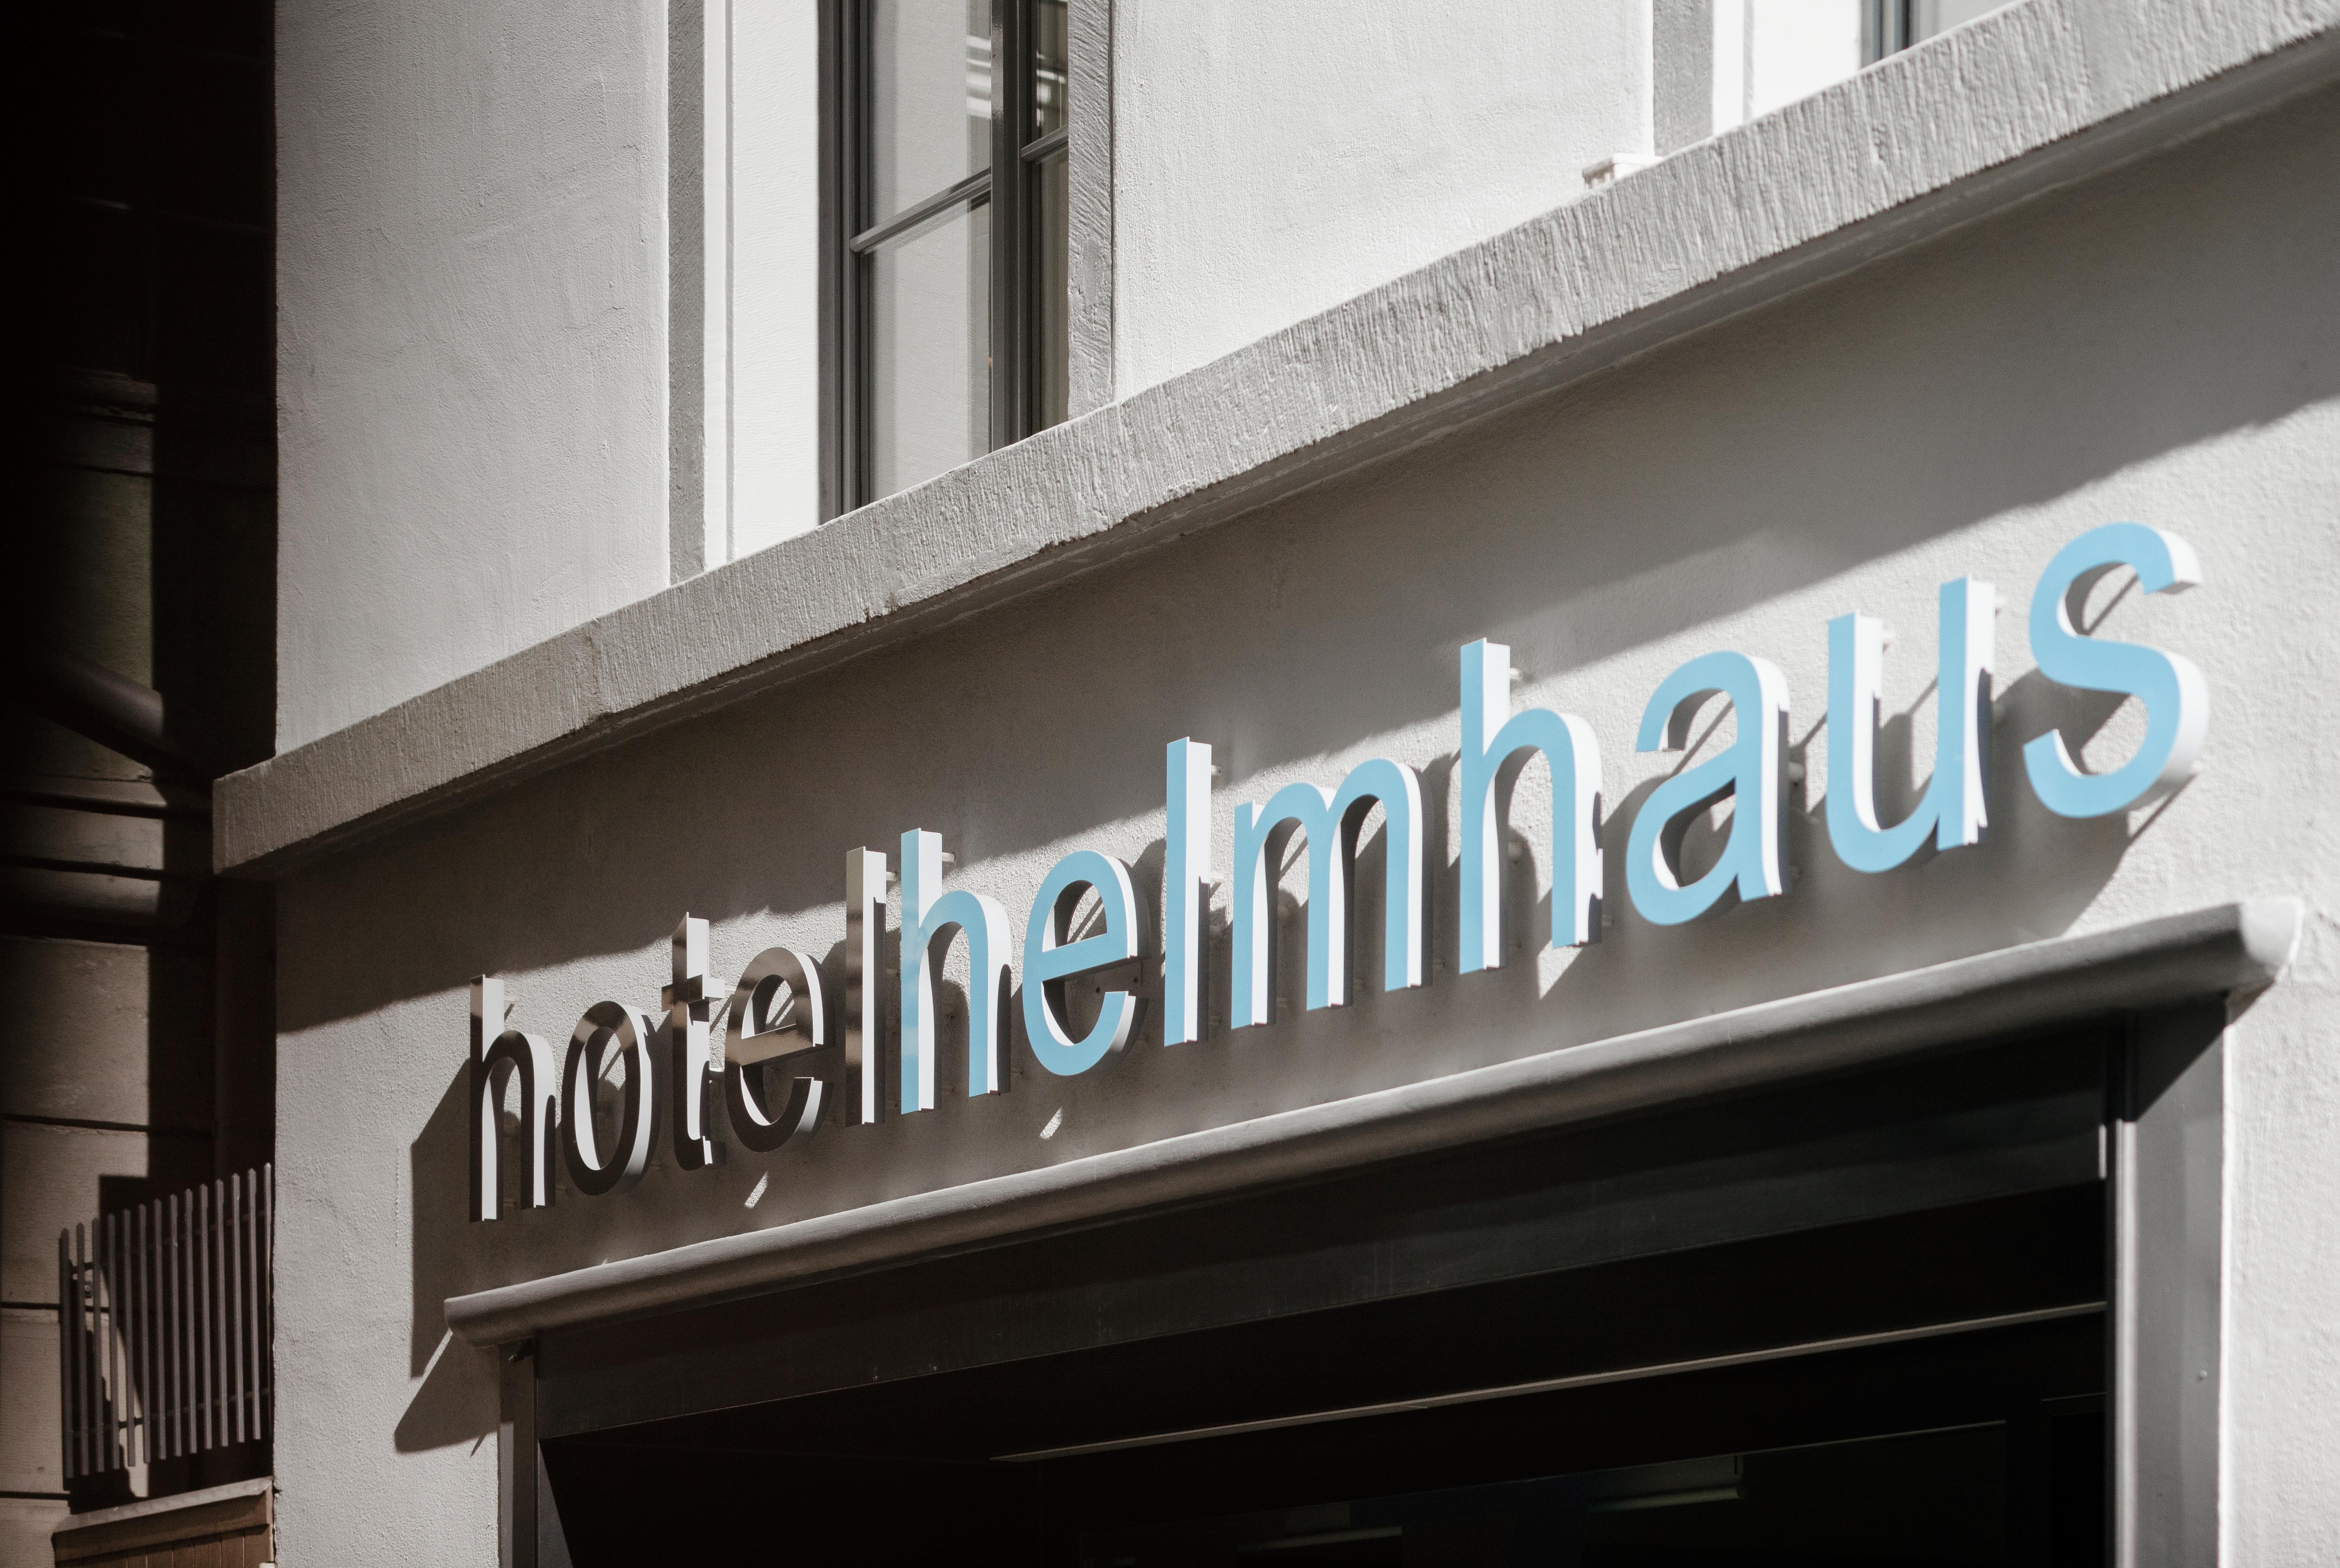 Boutique Hotel Helmhaus Zurich Exterior photo